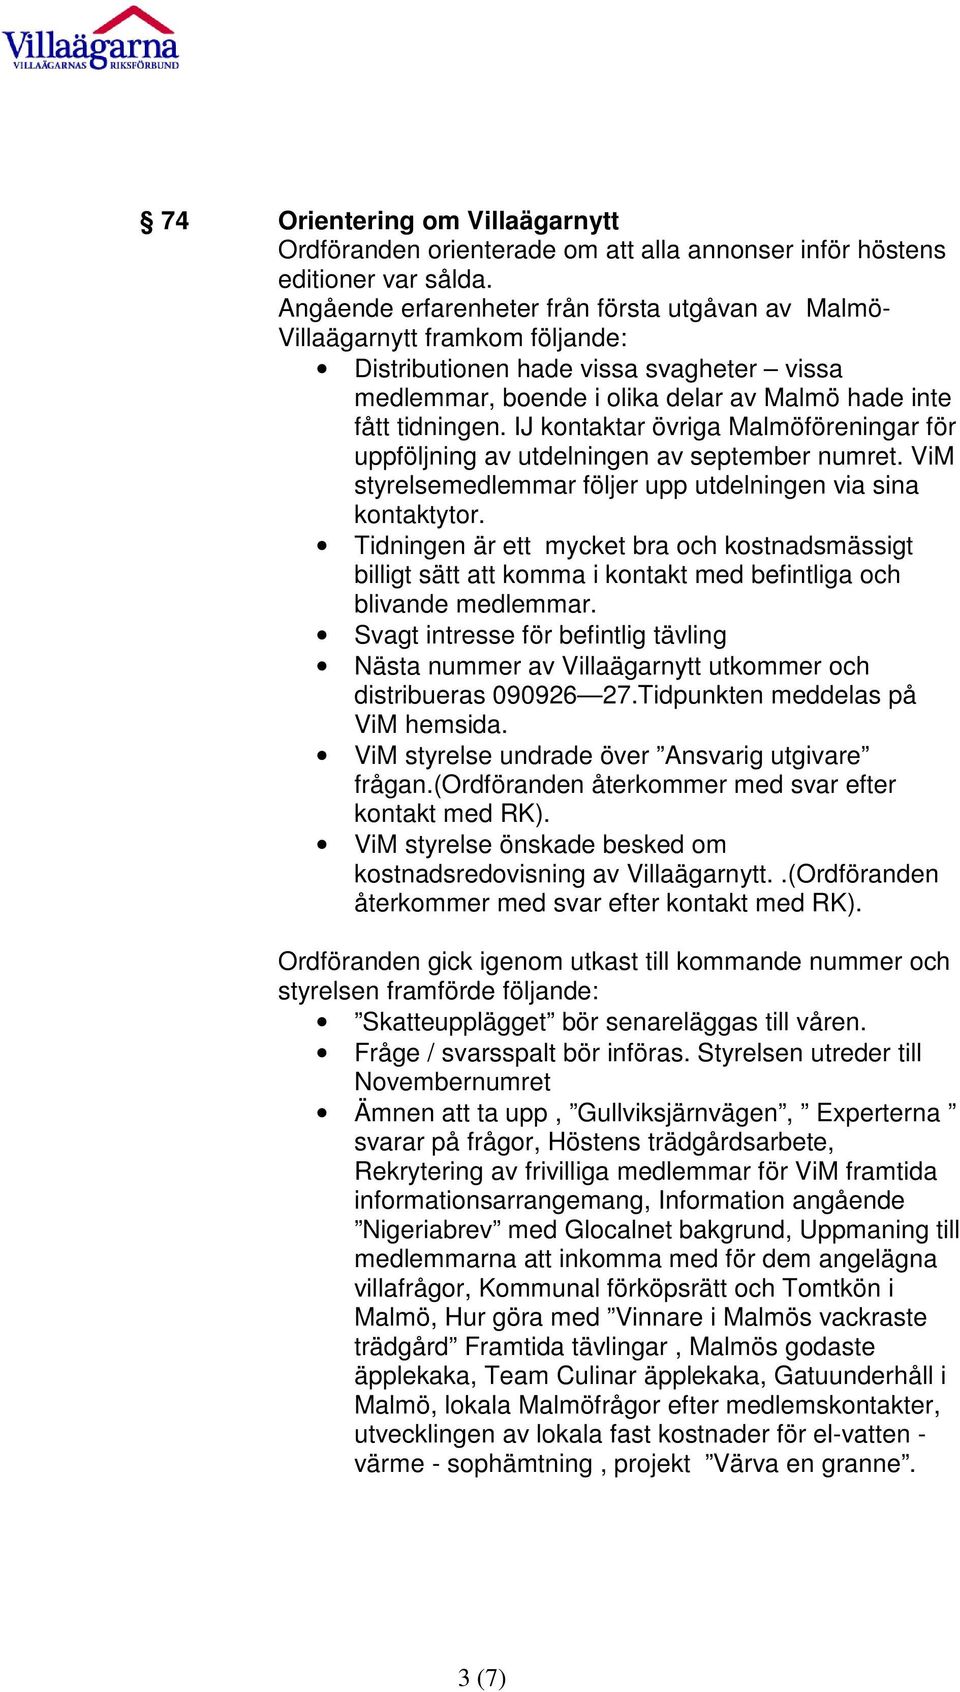 IJ kontaktar övriga Malmöföreningar för uppföljning av utdelningen av september numret. ViM styrelsemedlemmar följer upp utdelningen via sina kontaktytor.